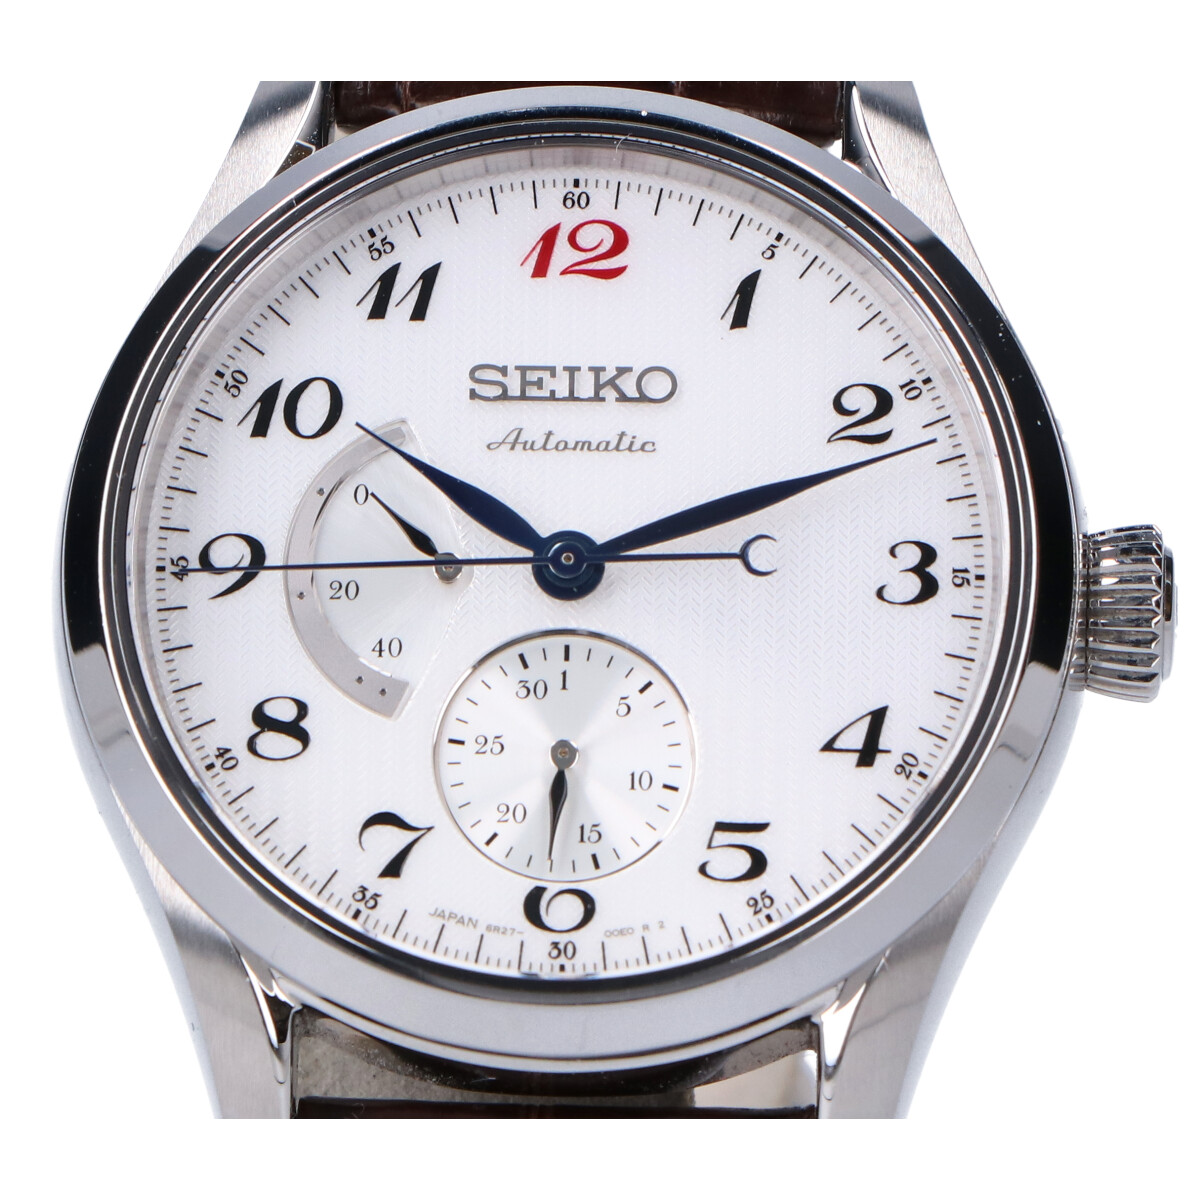 セイコーのSARW025 プレザージュ プレステージ 自動巻 腕時計の買取実績です。